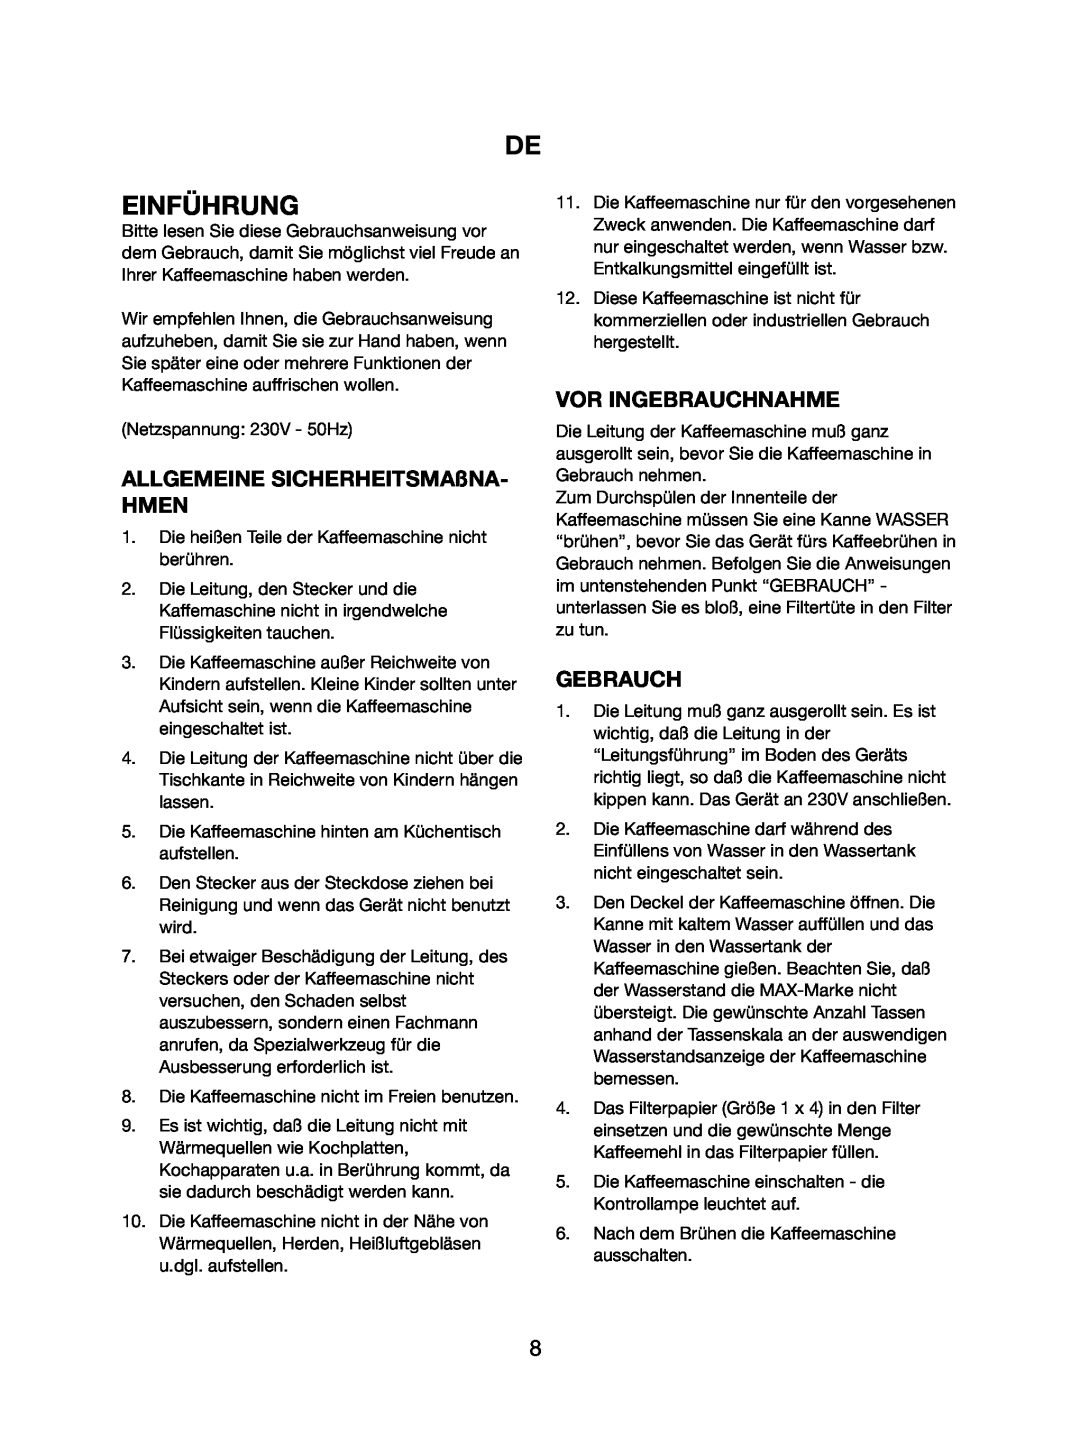 Melissa 745-112 manual Einführung, Vor Ingebrauchnahme, ALLGEMEINE SICHERHEITSMAßNA HMEN, Gebrauch 